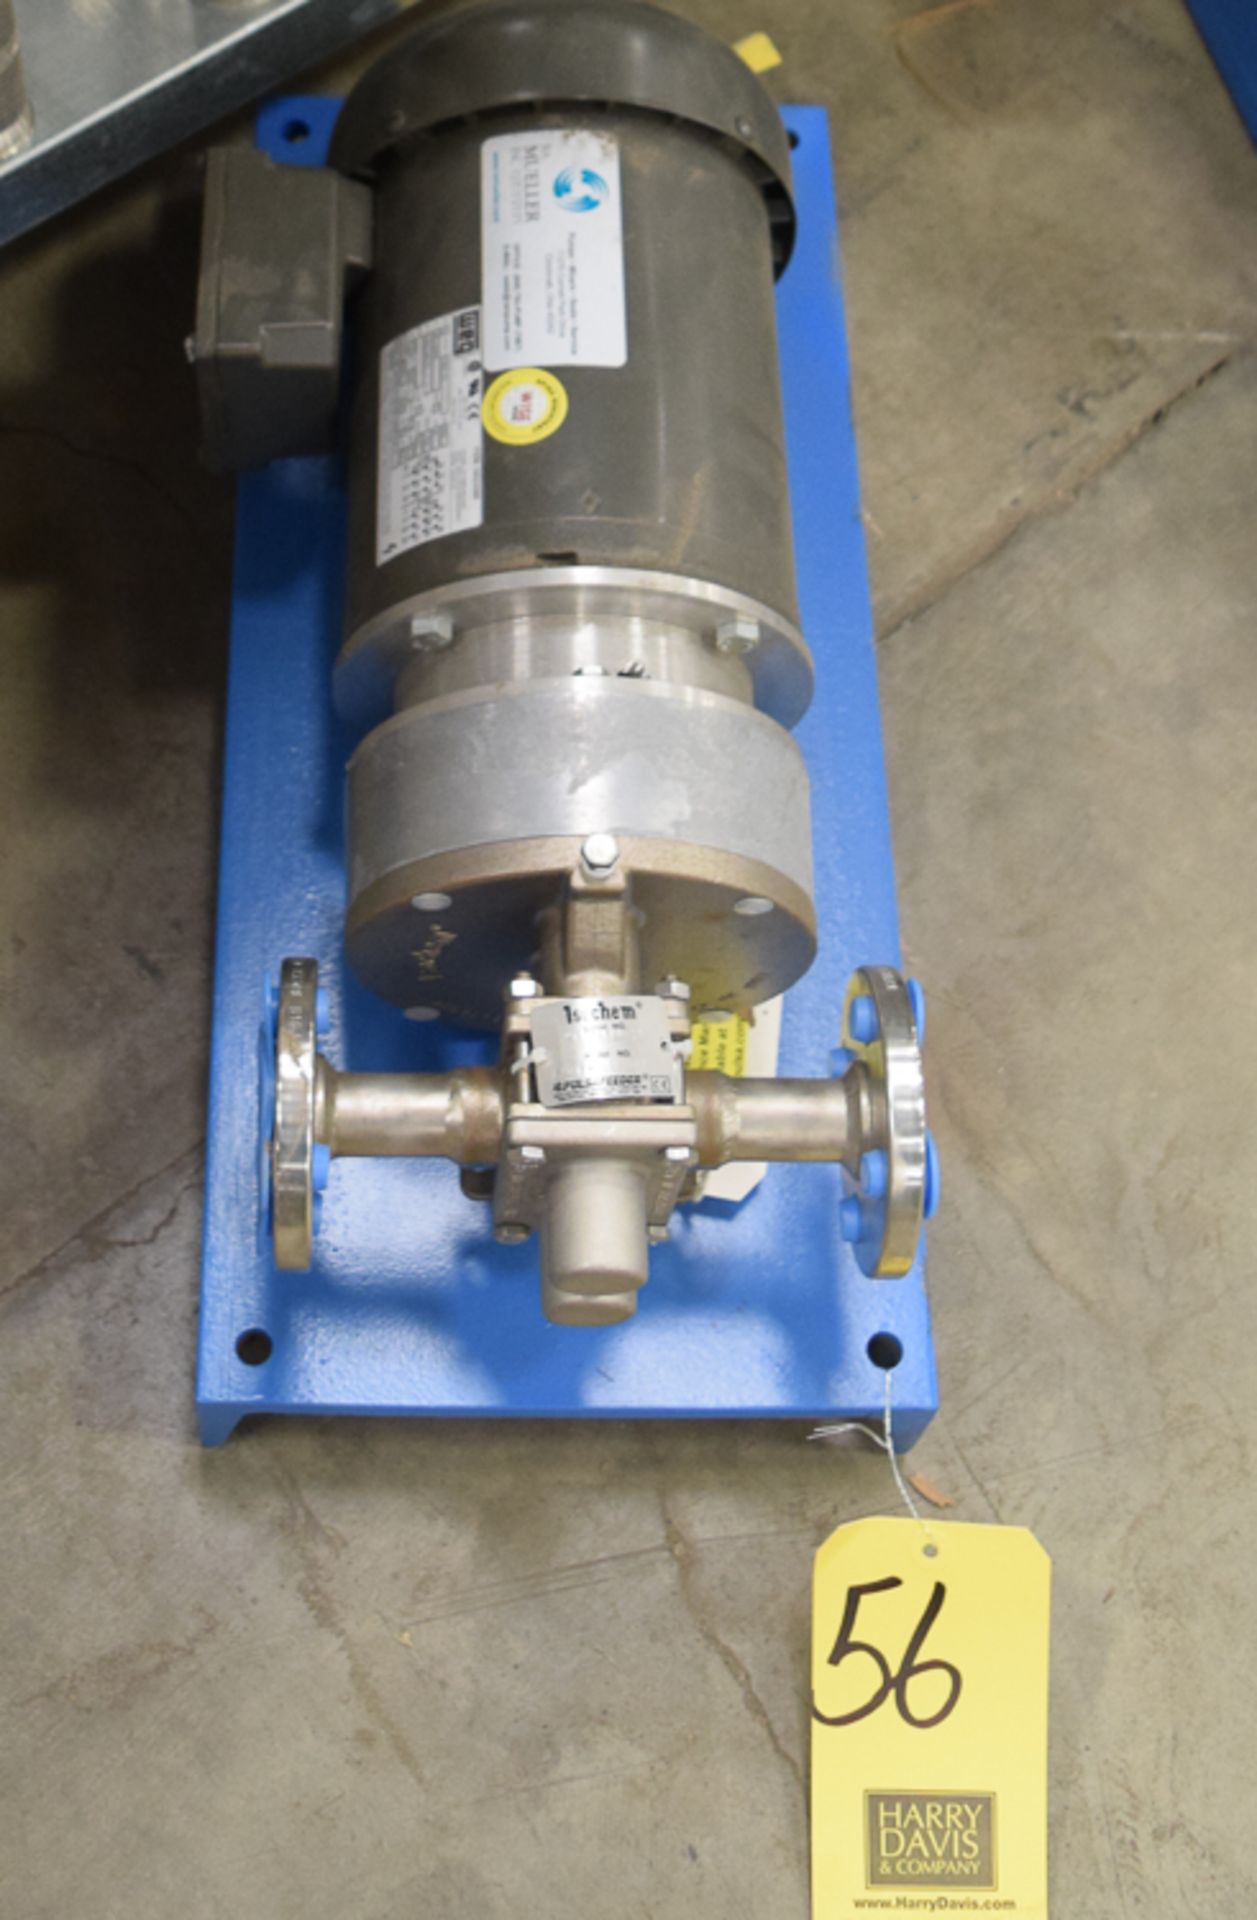 NEW Mueller 1-1/2 HP Metering Pump, Model P255B with Chem-Tech Series 150 Pulsafeeder Metering Pump,